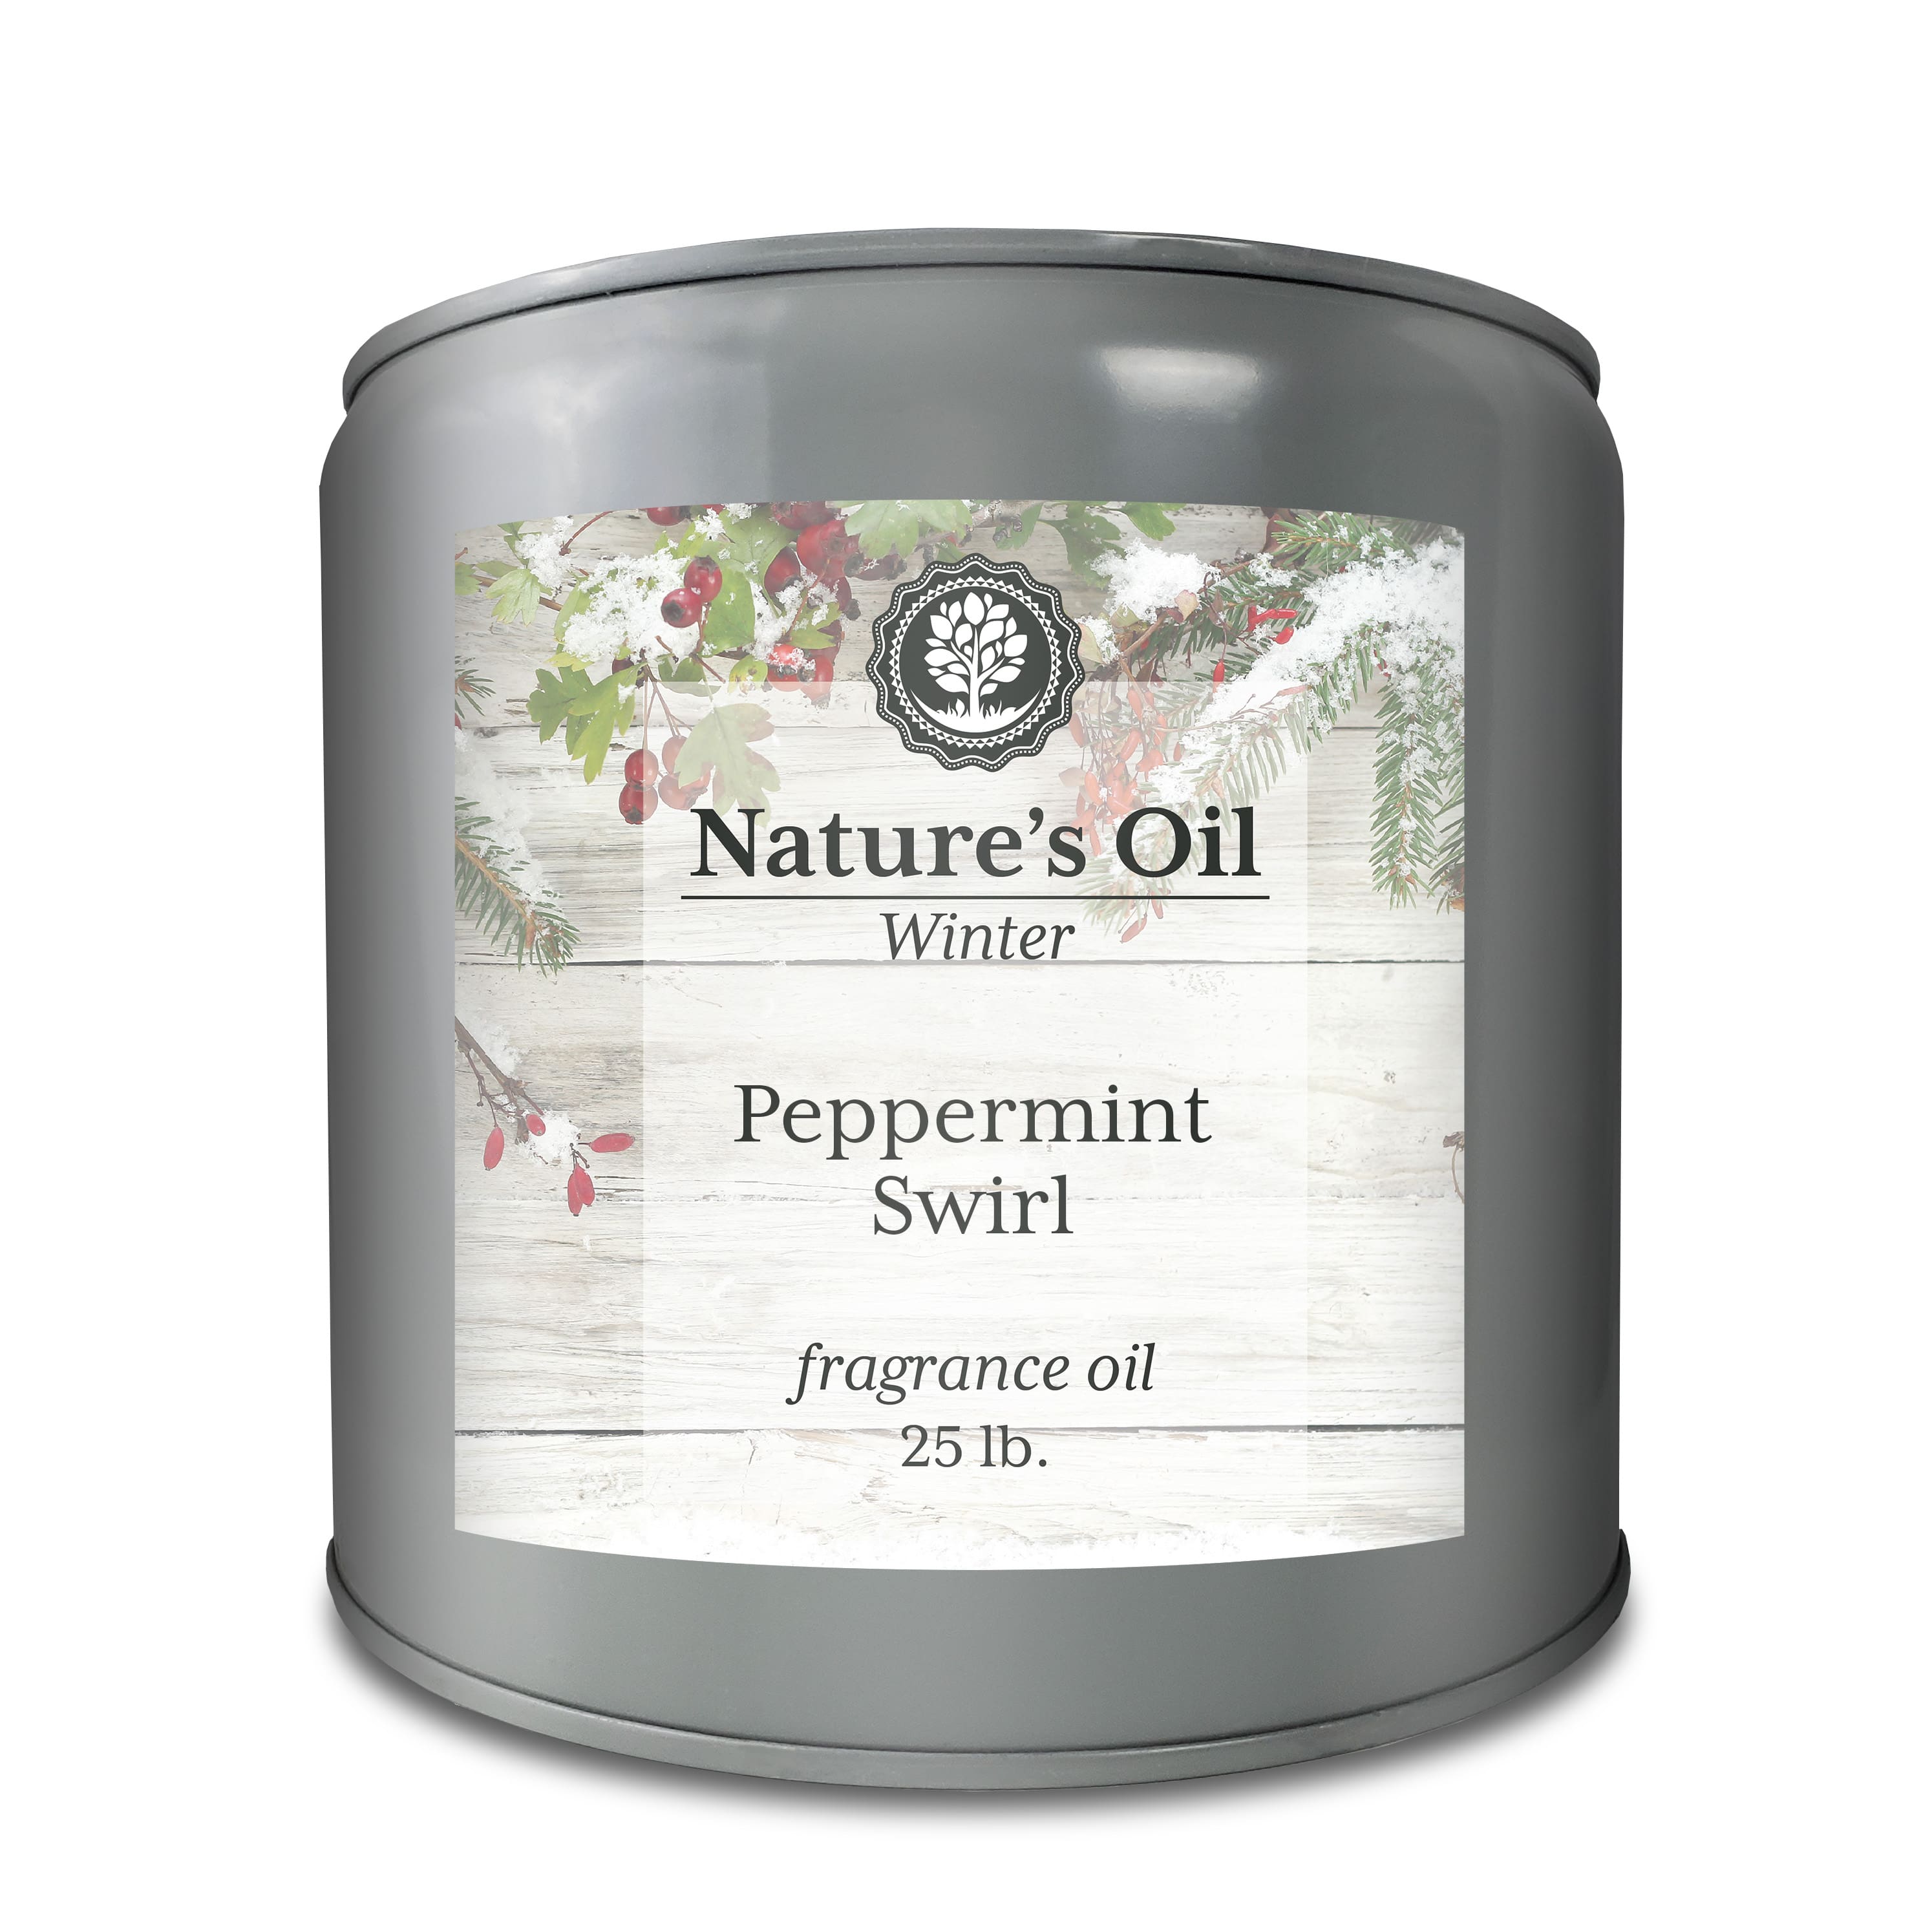 Natures Oil Peppermint Swirl Fragrance Oil Fragrance Oils Michaels 8138